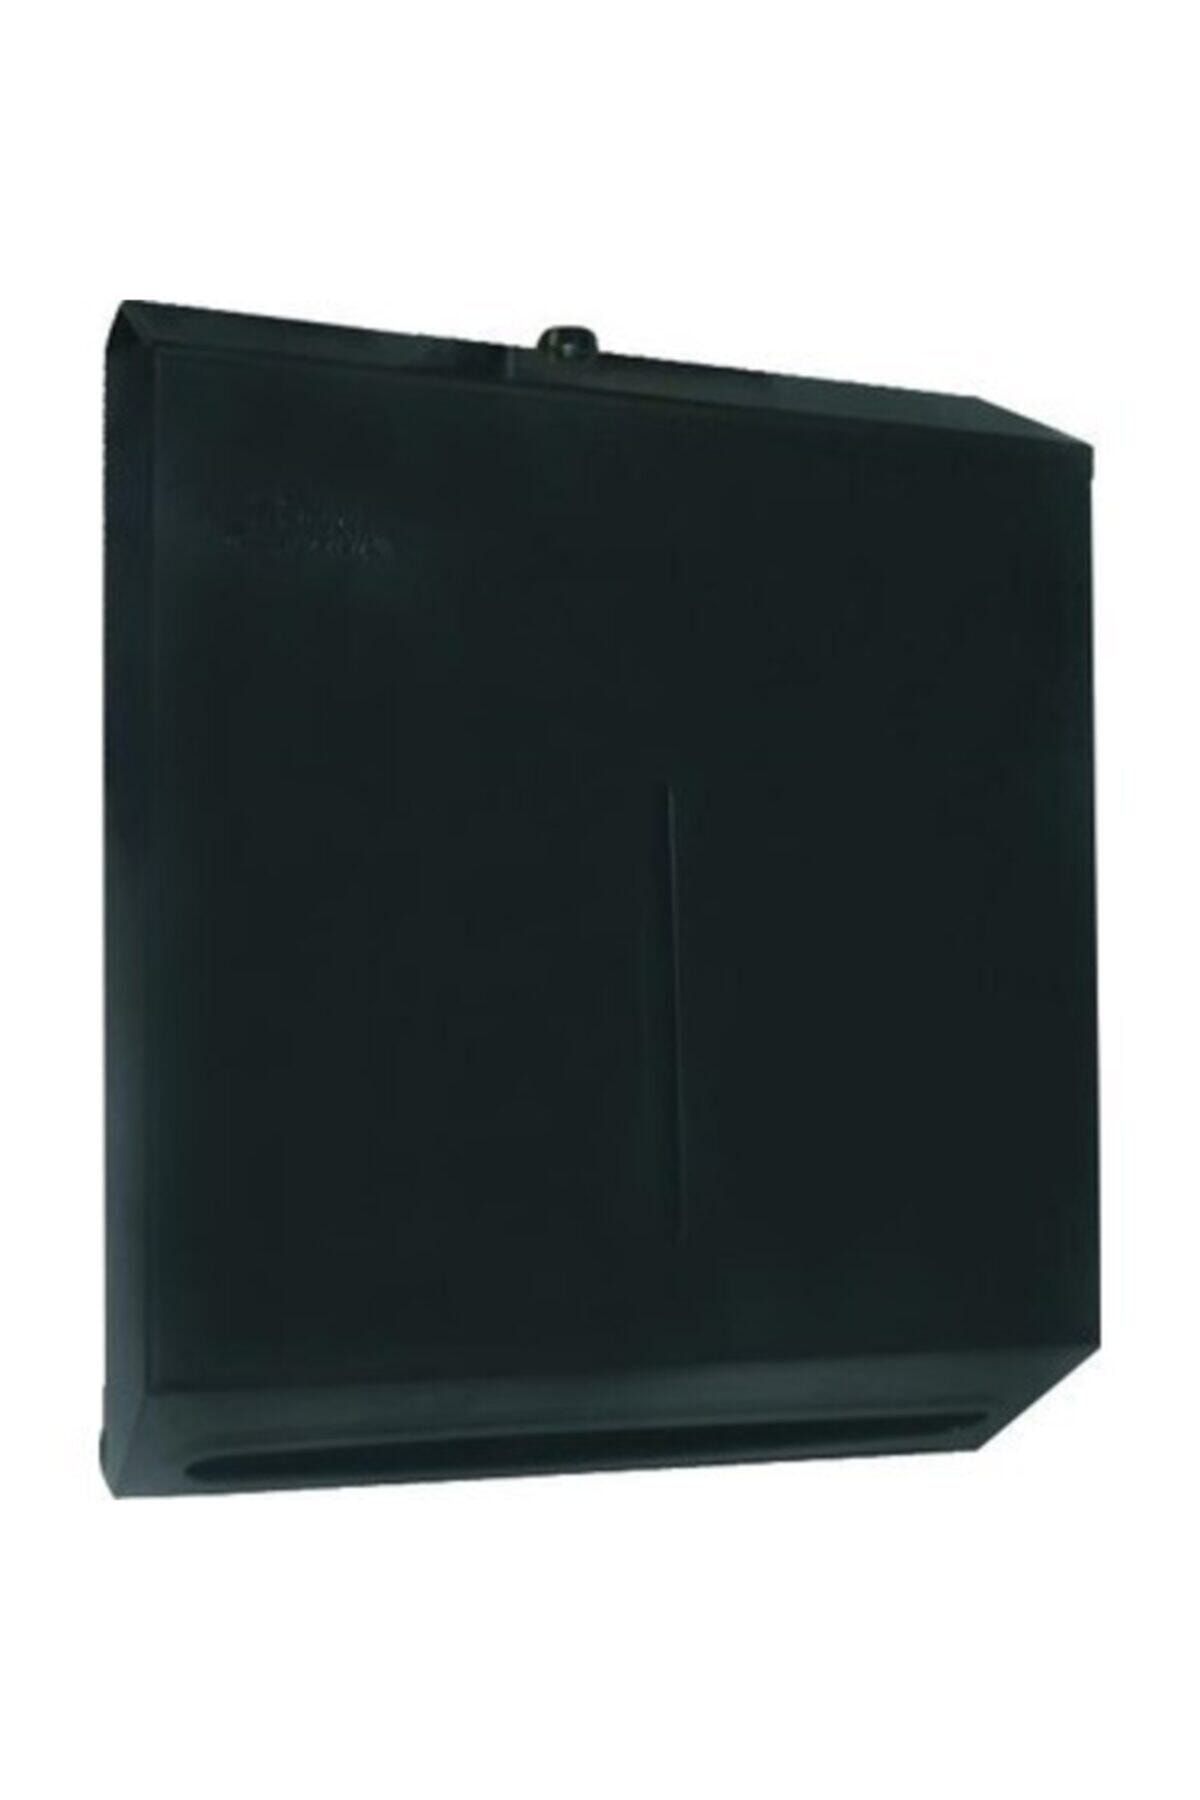 Arı Metal 400 Kağıt Kapasiteli Mat Siyah Renk Çelik Z Katlama Kağıt Havluluk